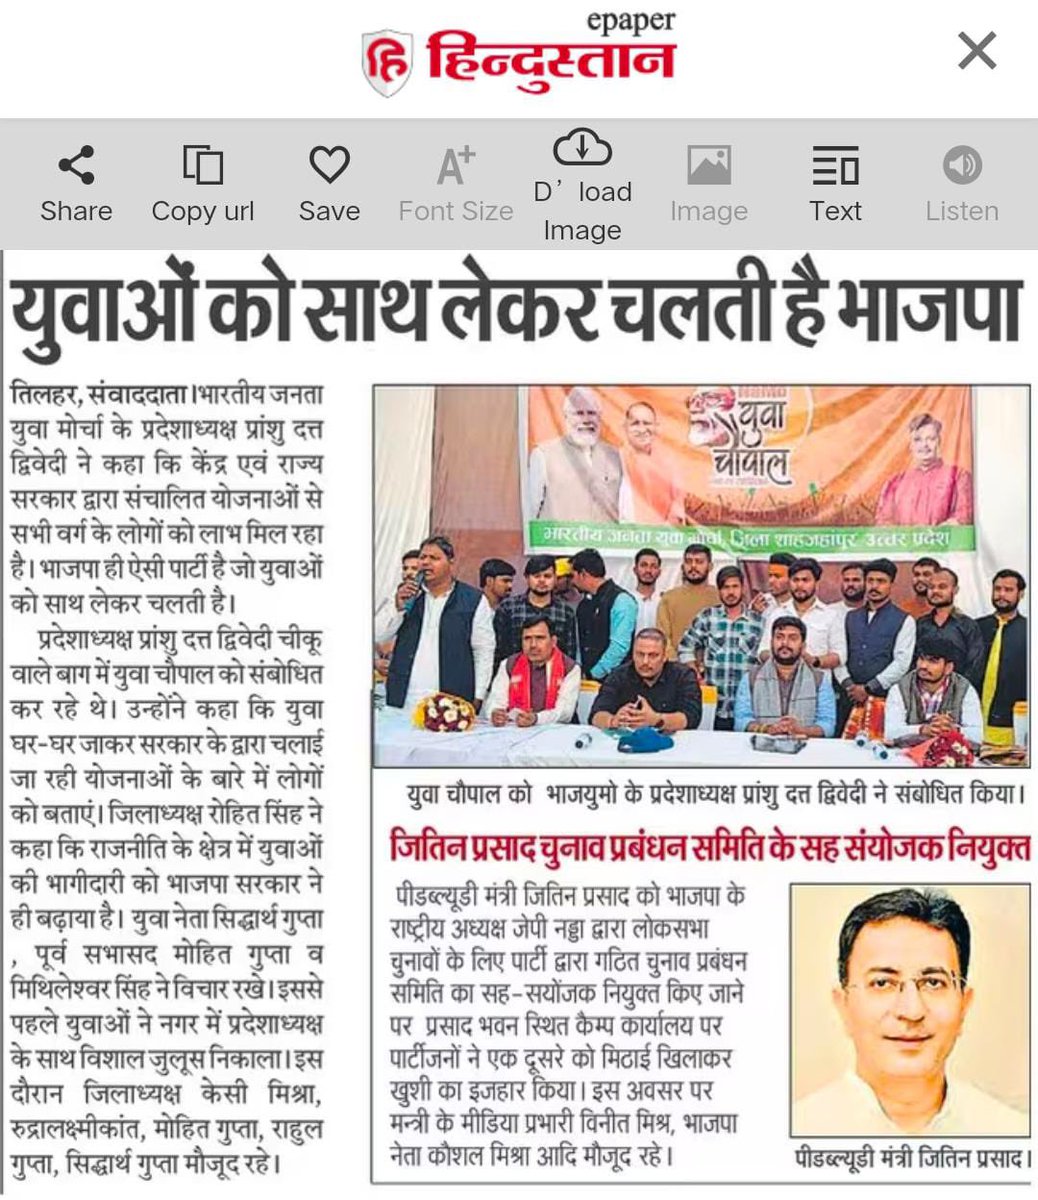 युवा मोर्चा प्रदेश अध्यक्ष @PranshuDutt जी का प्रवास कार्यक्रम समाचार पत्रों में 
युवा मोर्चा ज़िंदाबाद
#RudralaxmikantTeam 
#UP_Yuva_Chaupal 
@BJYM4UP